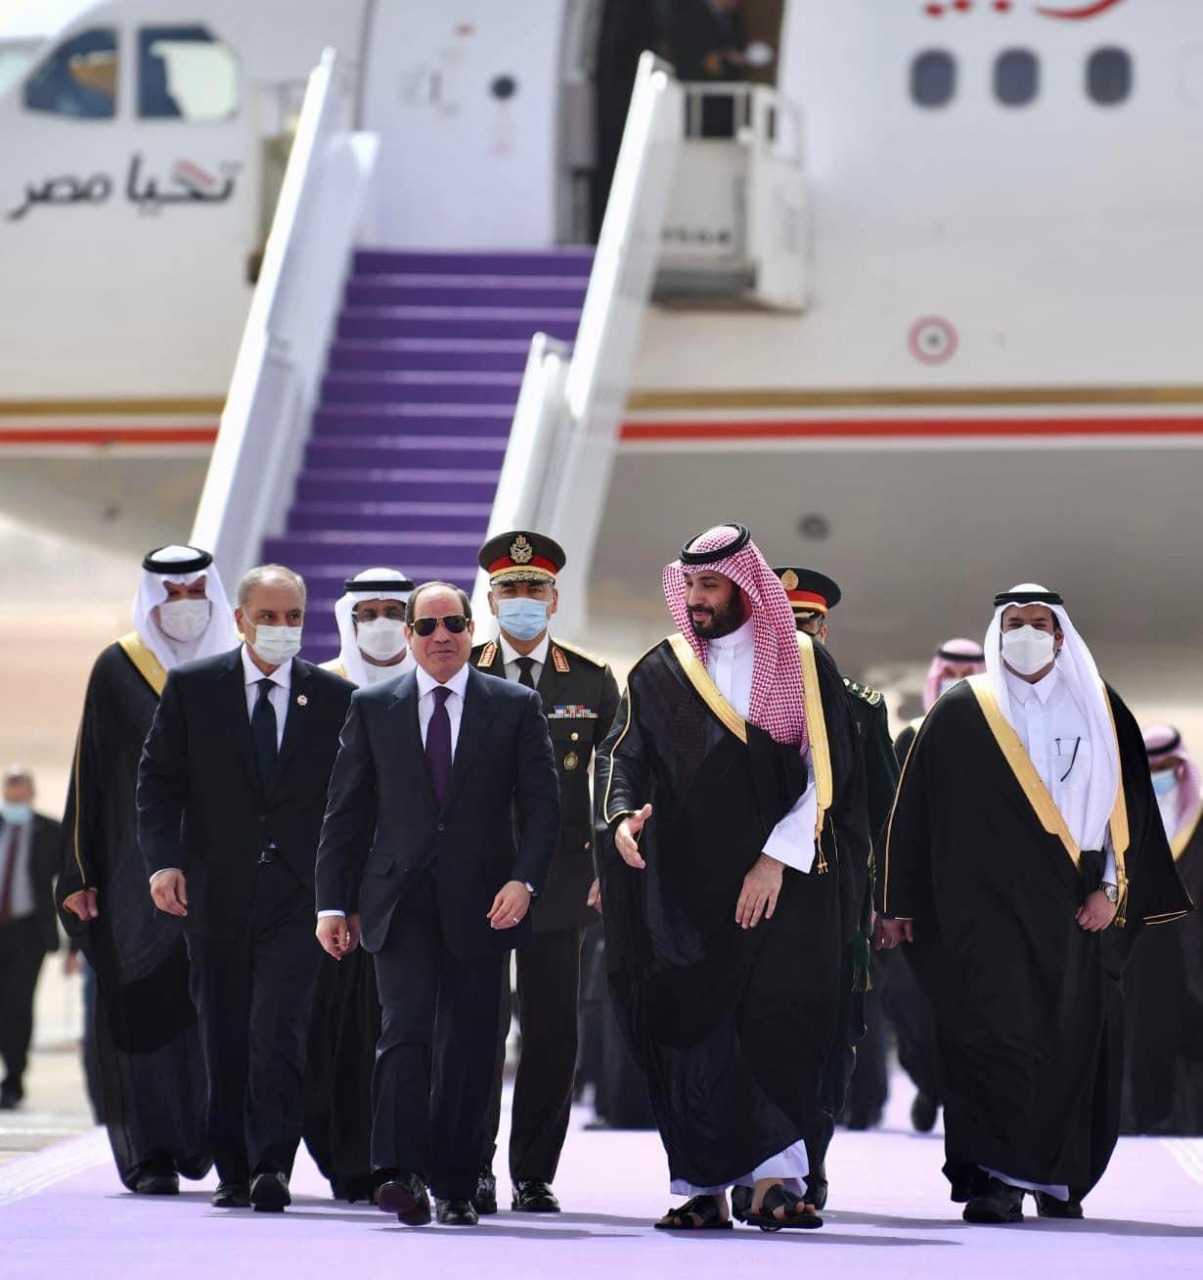 سمو الأمير محمد بن سلمان بن عبد العزيز ولي عهد المملكة العربية السعودية يستقبل السيد الرئيس عبد الفت